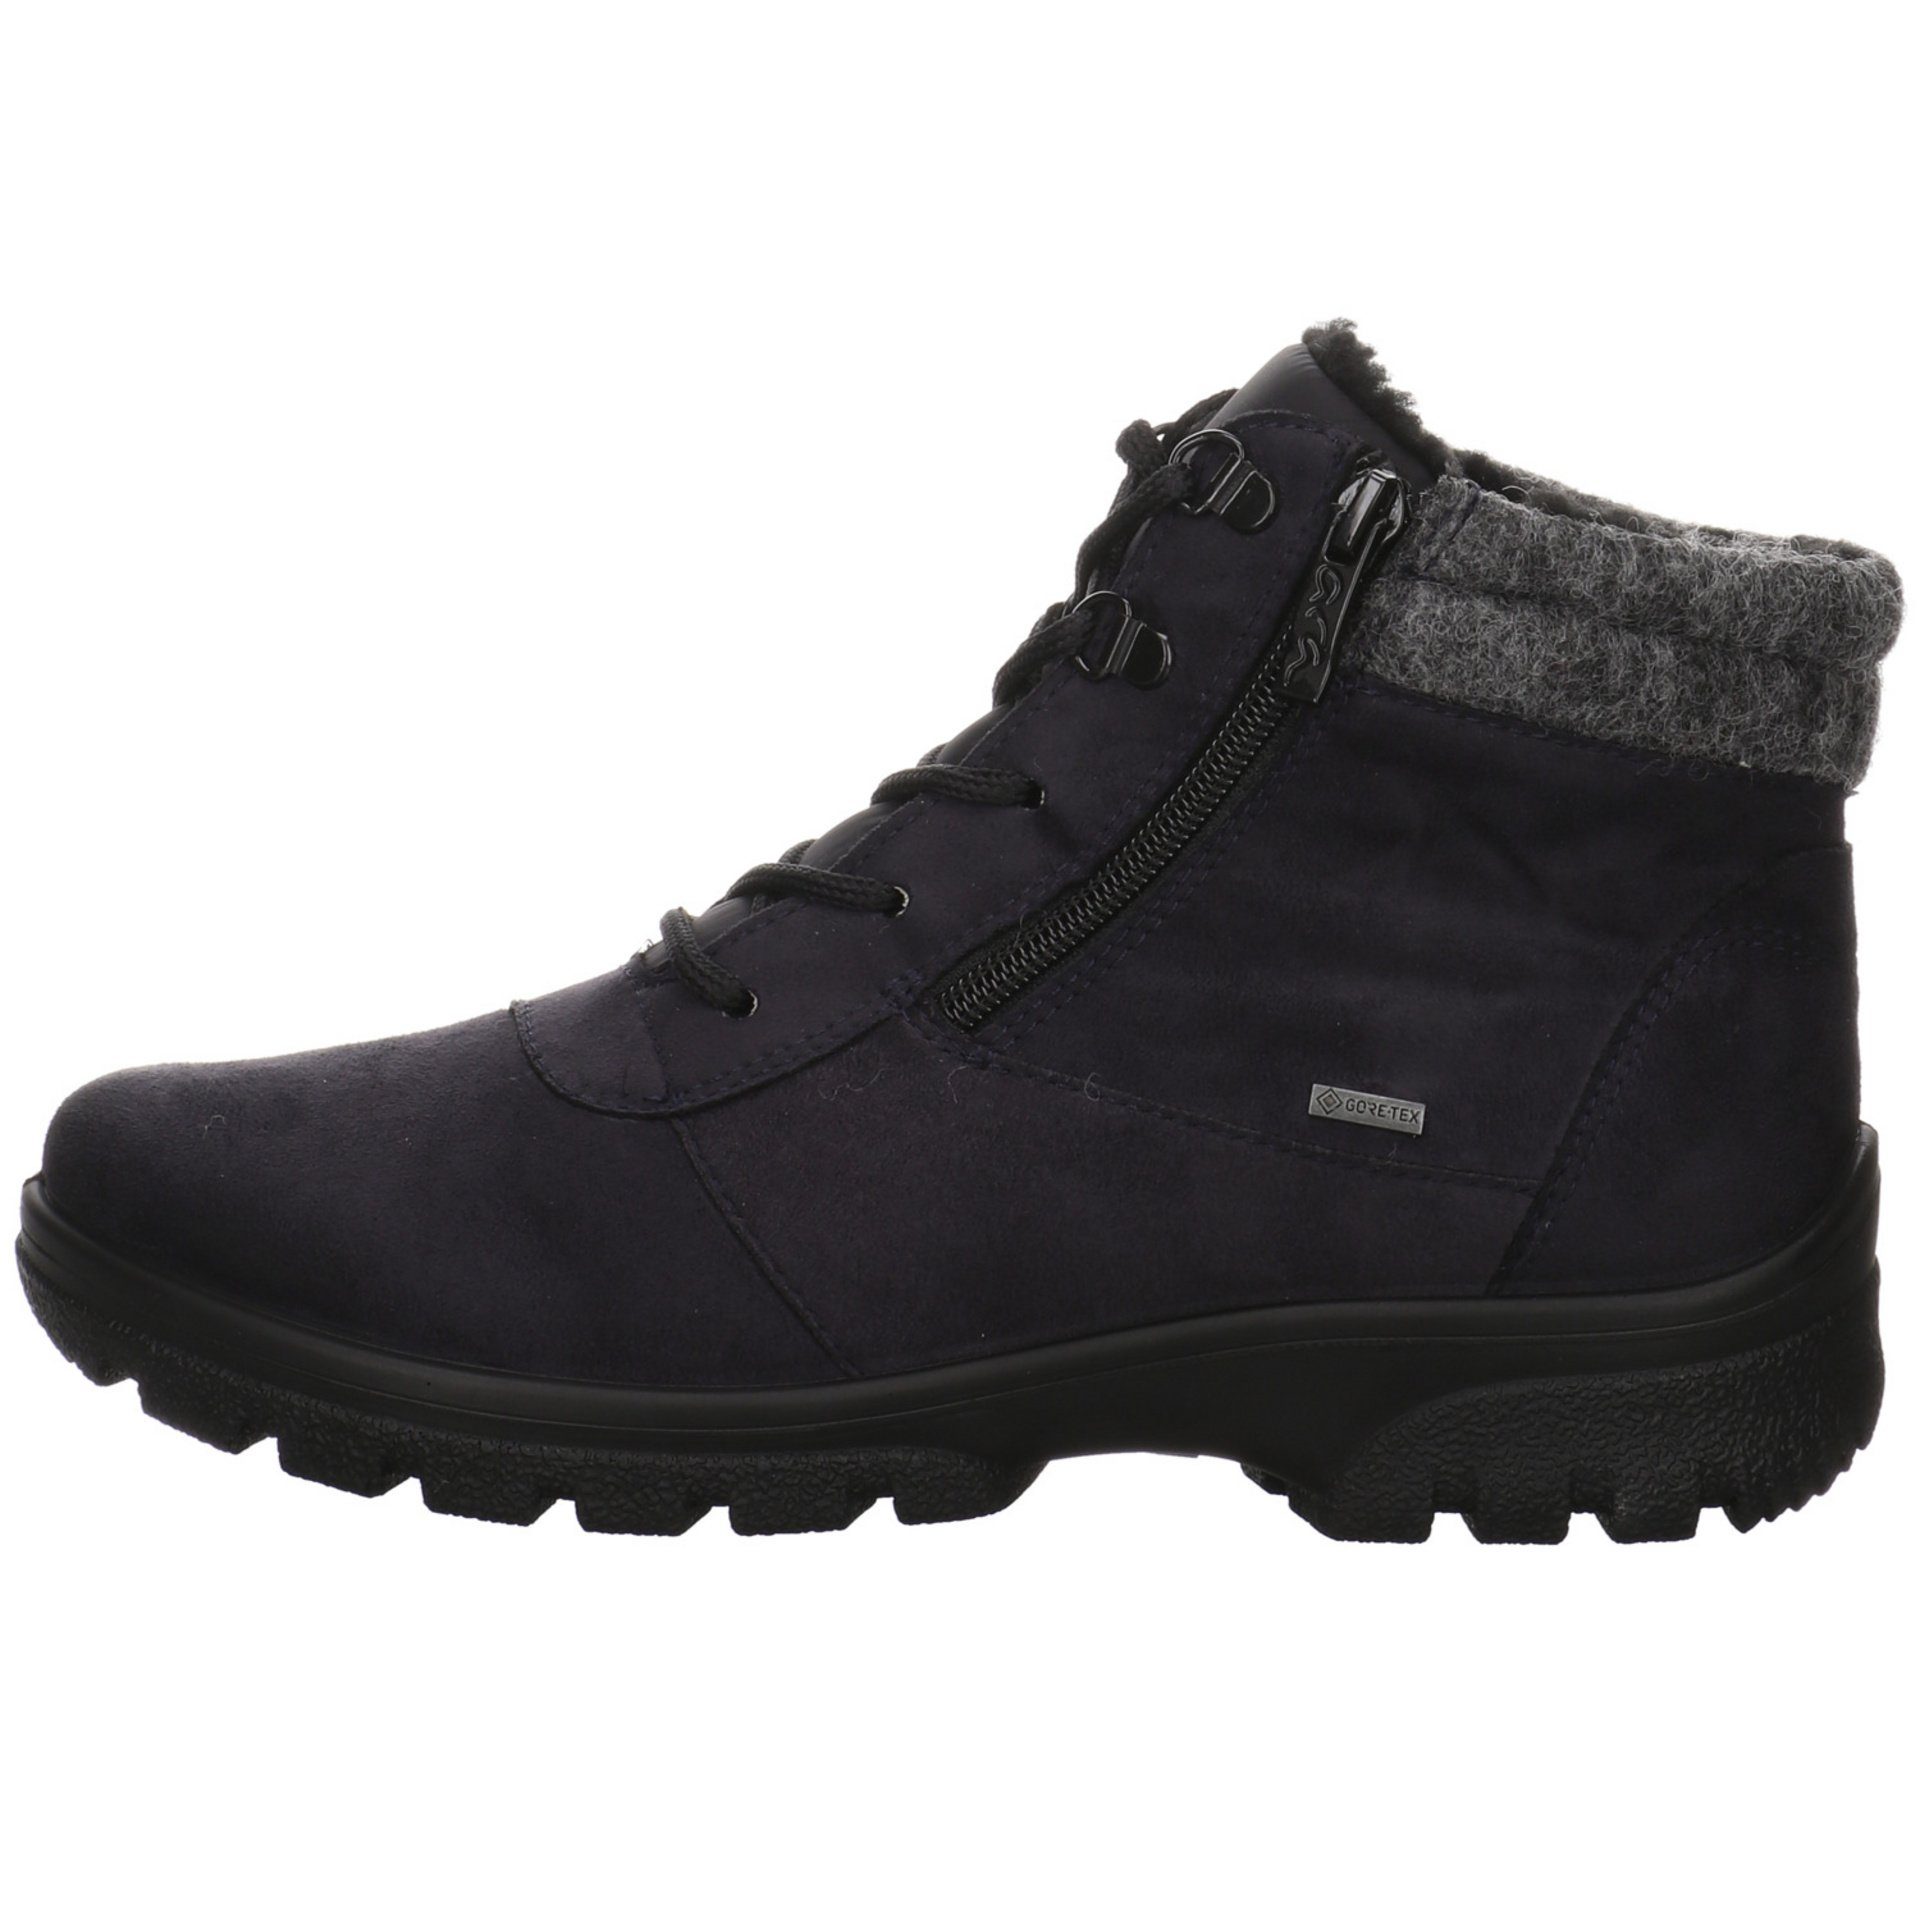 Ara Damen Snowboots Schuhe Saas-Fee blau/grau/schwarz Snowboots Boots Leder-/Textilkombination